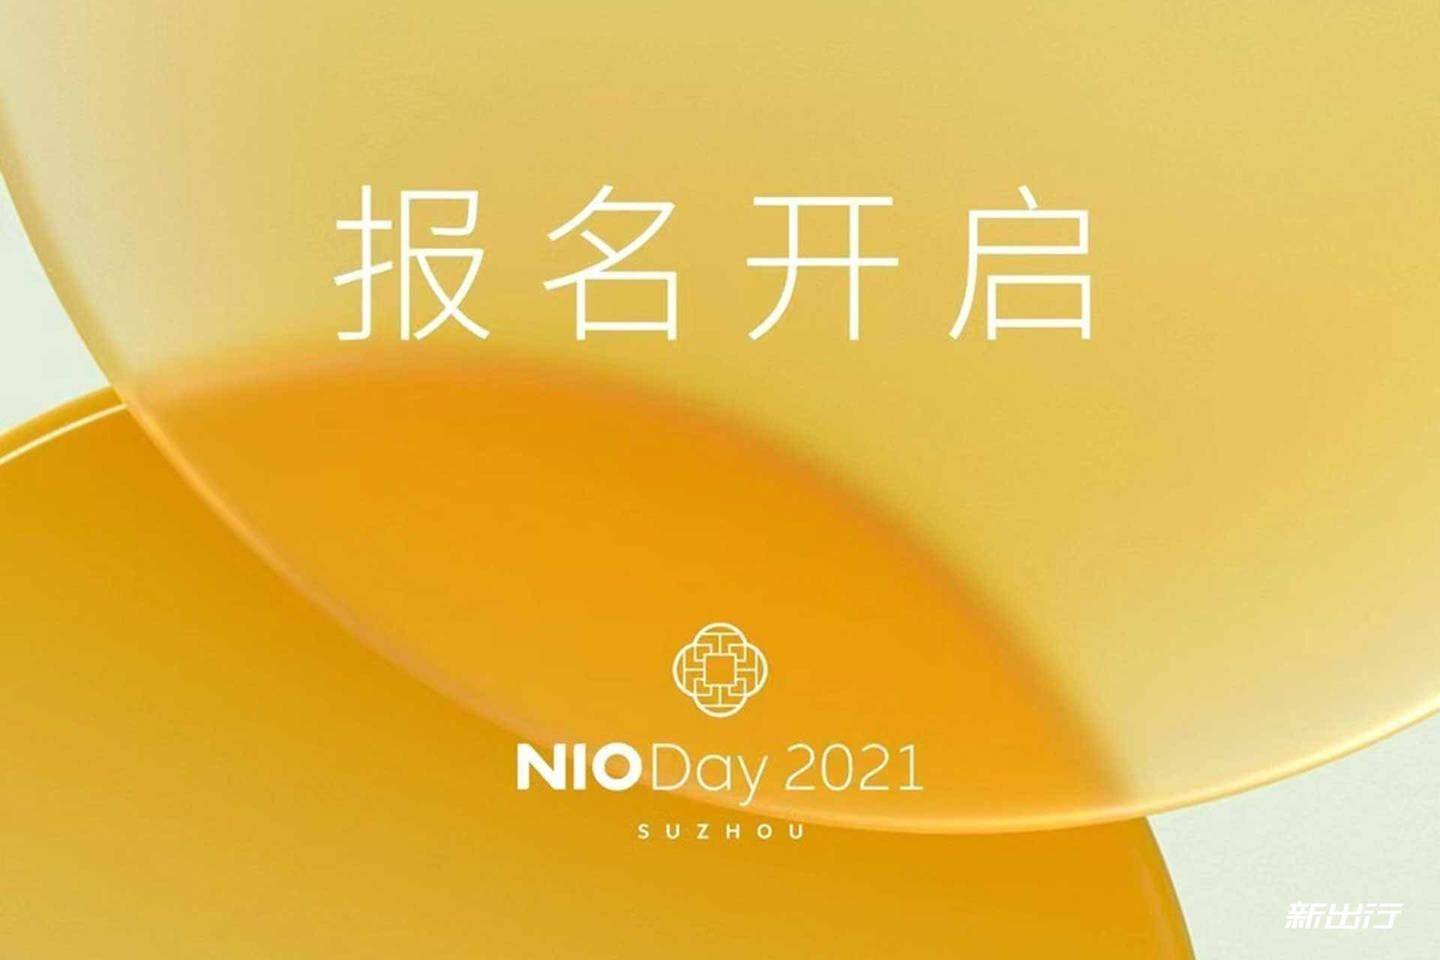 概率|蔚来 2021 年 NIO Day 将于 12 月 18 日在苏州举办